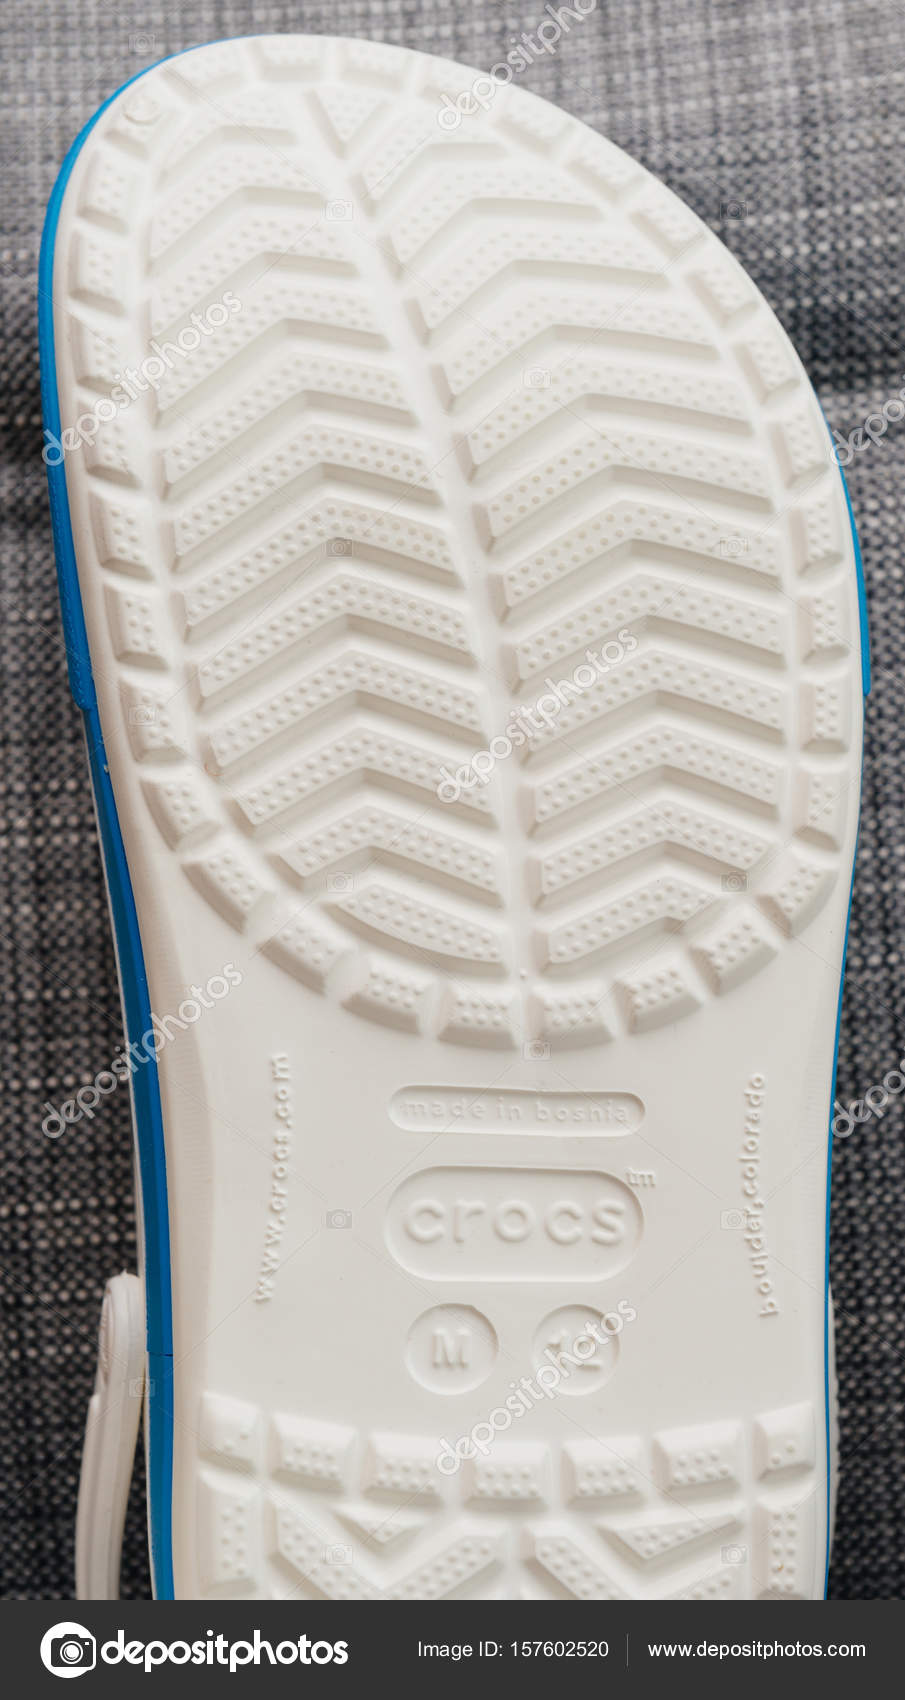 Crocs clogs shoes shopping sole 